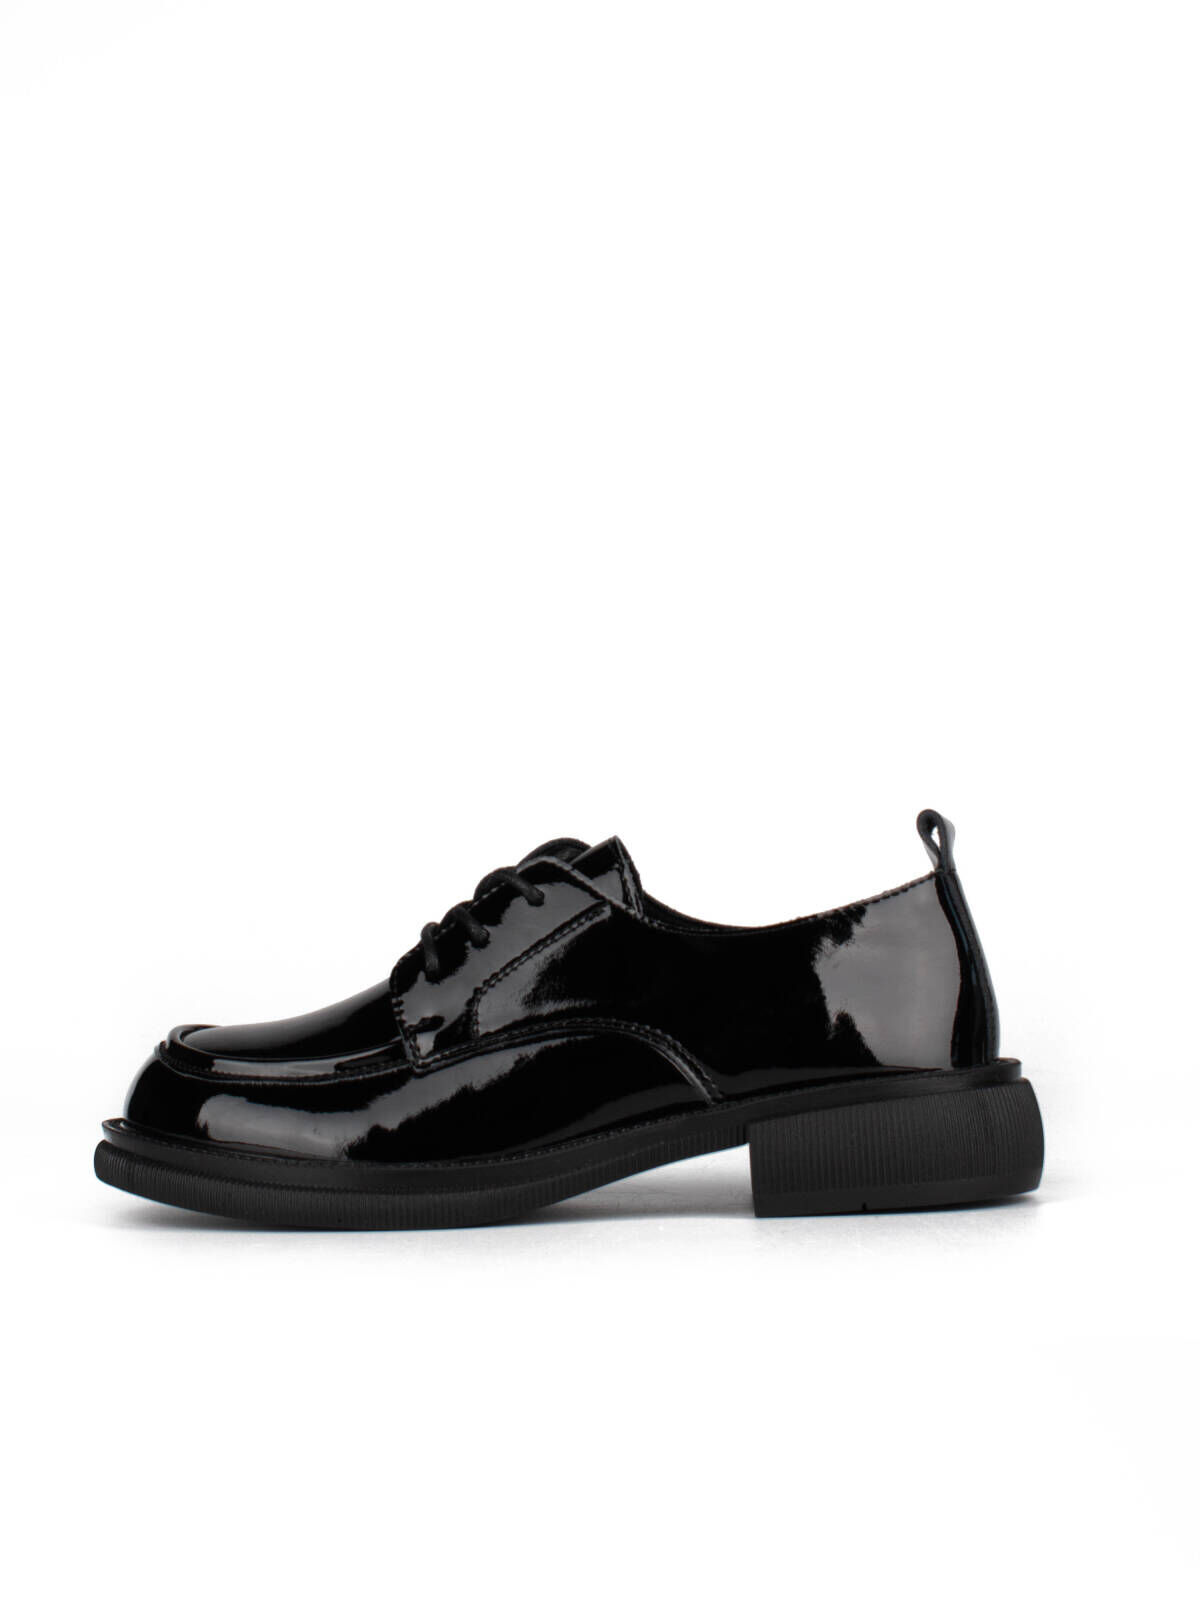 Туфли Oxfords женские черные кожа лакированная  демисезон от производителя 2M